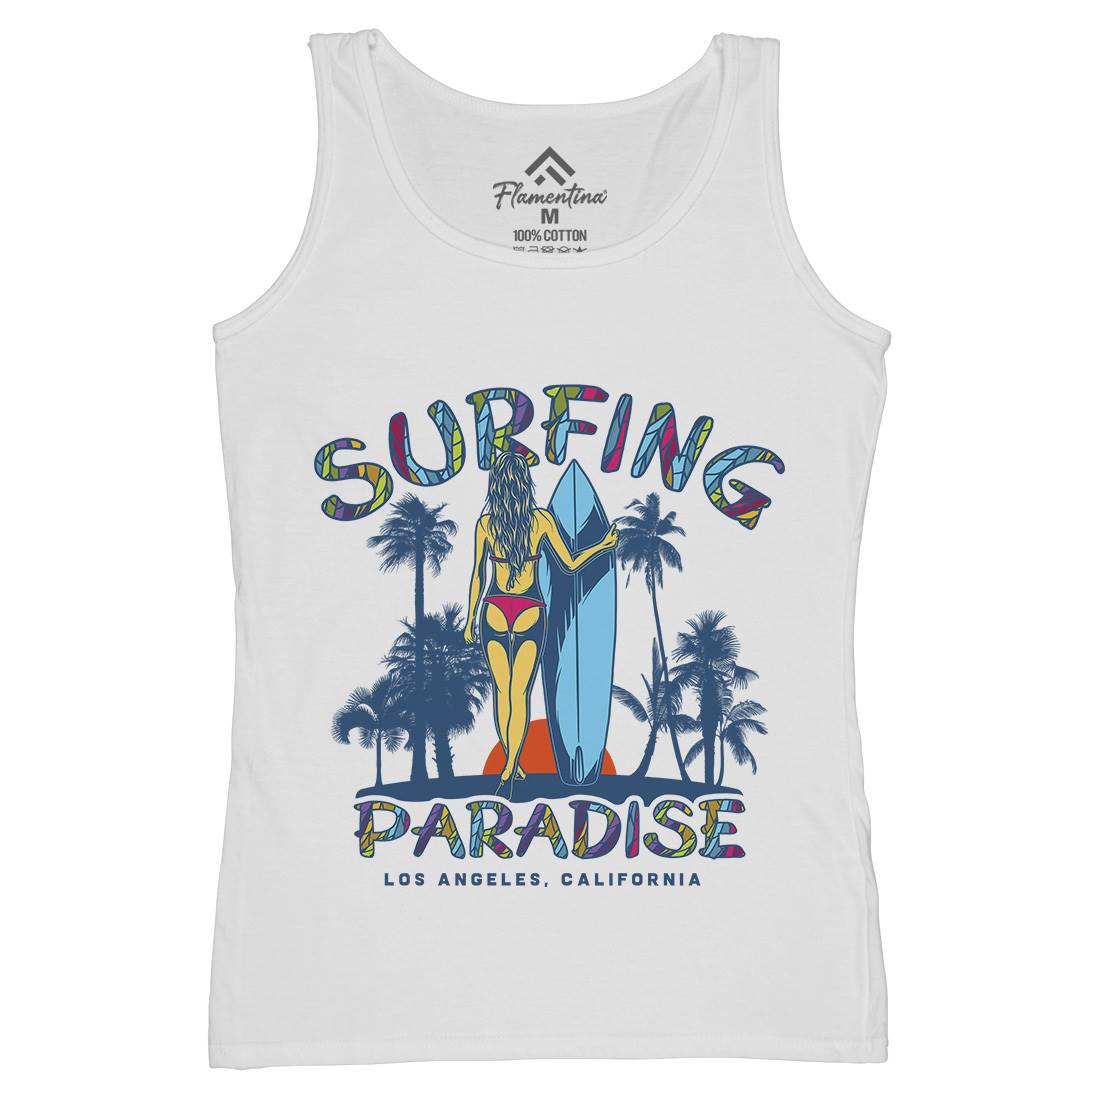 Surfing Paradise La Womens Organic Tank Top Vest Surf D990